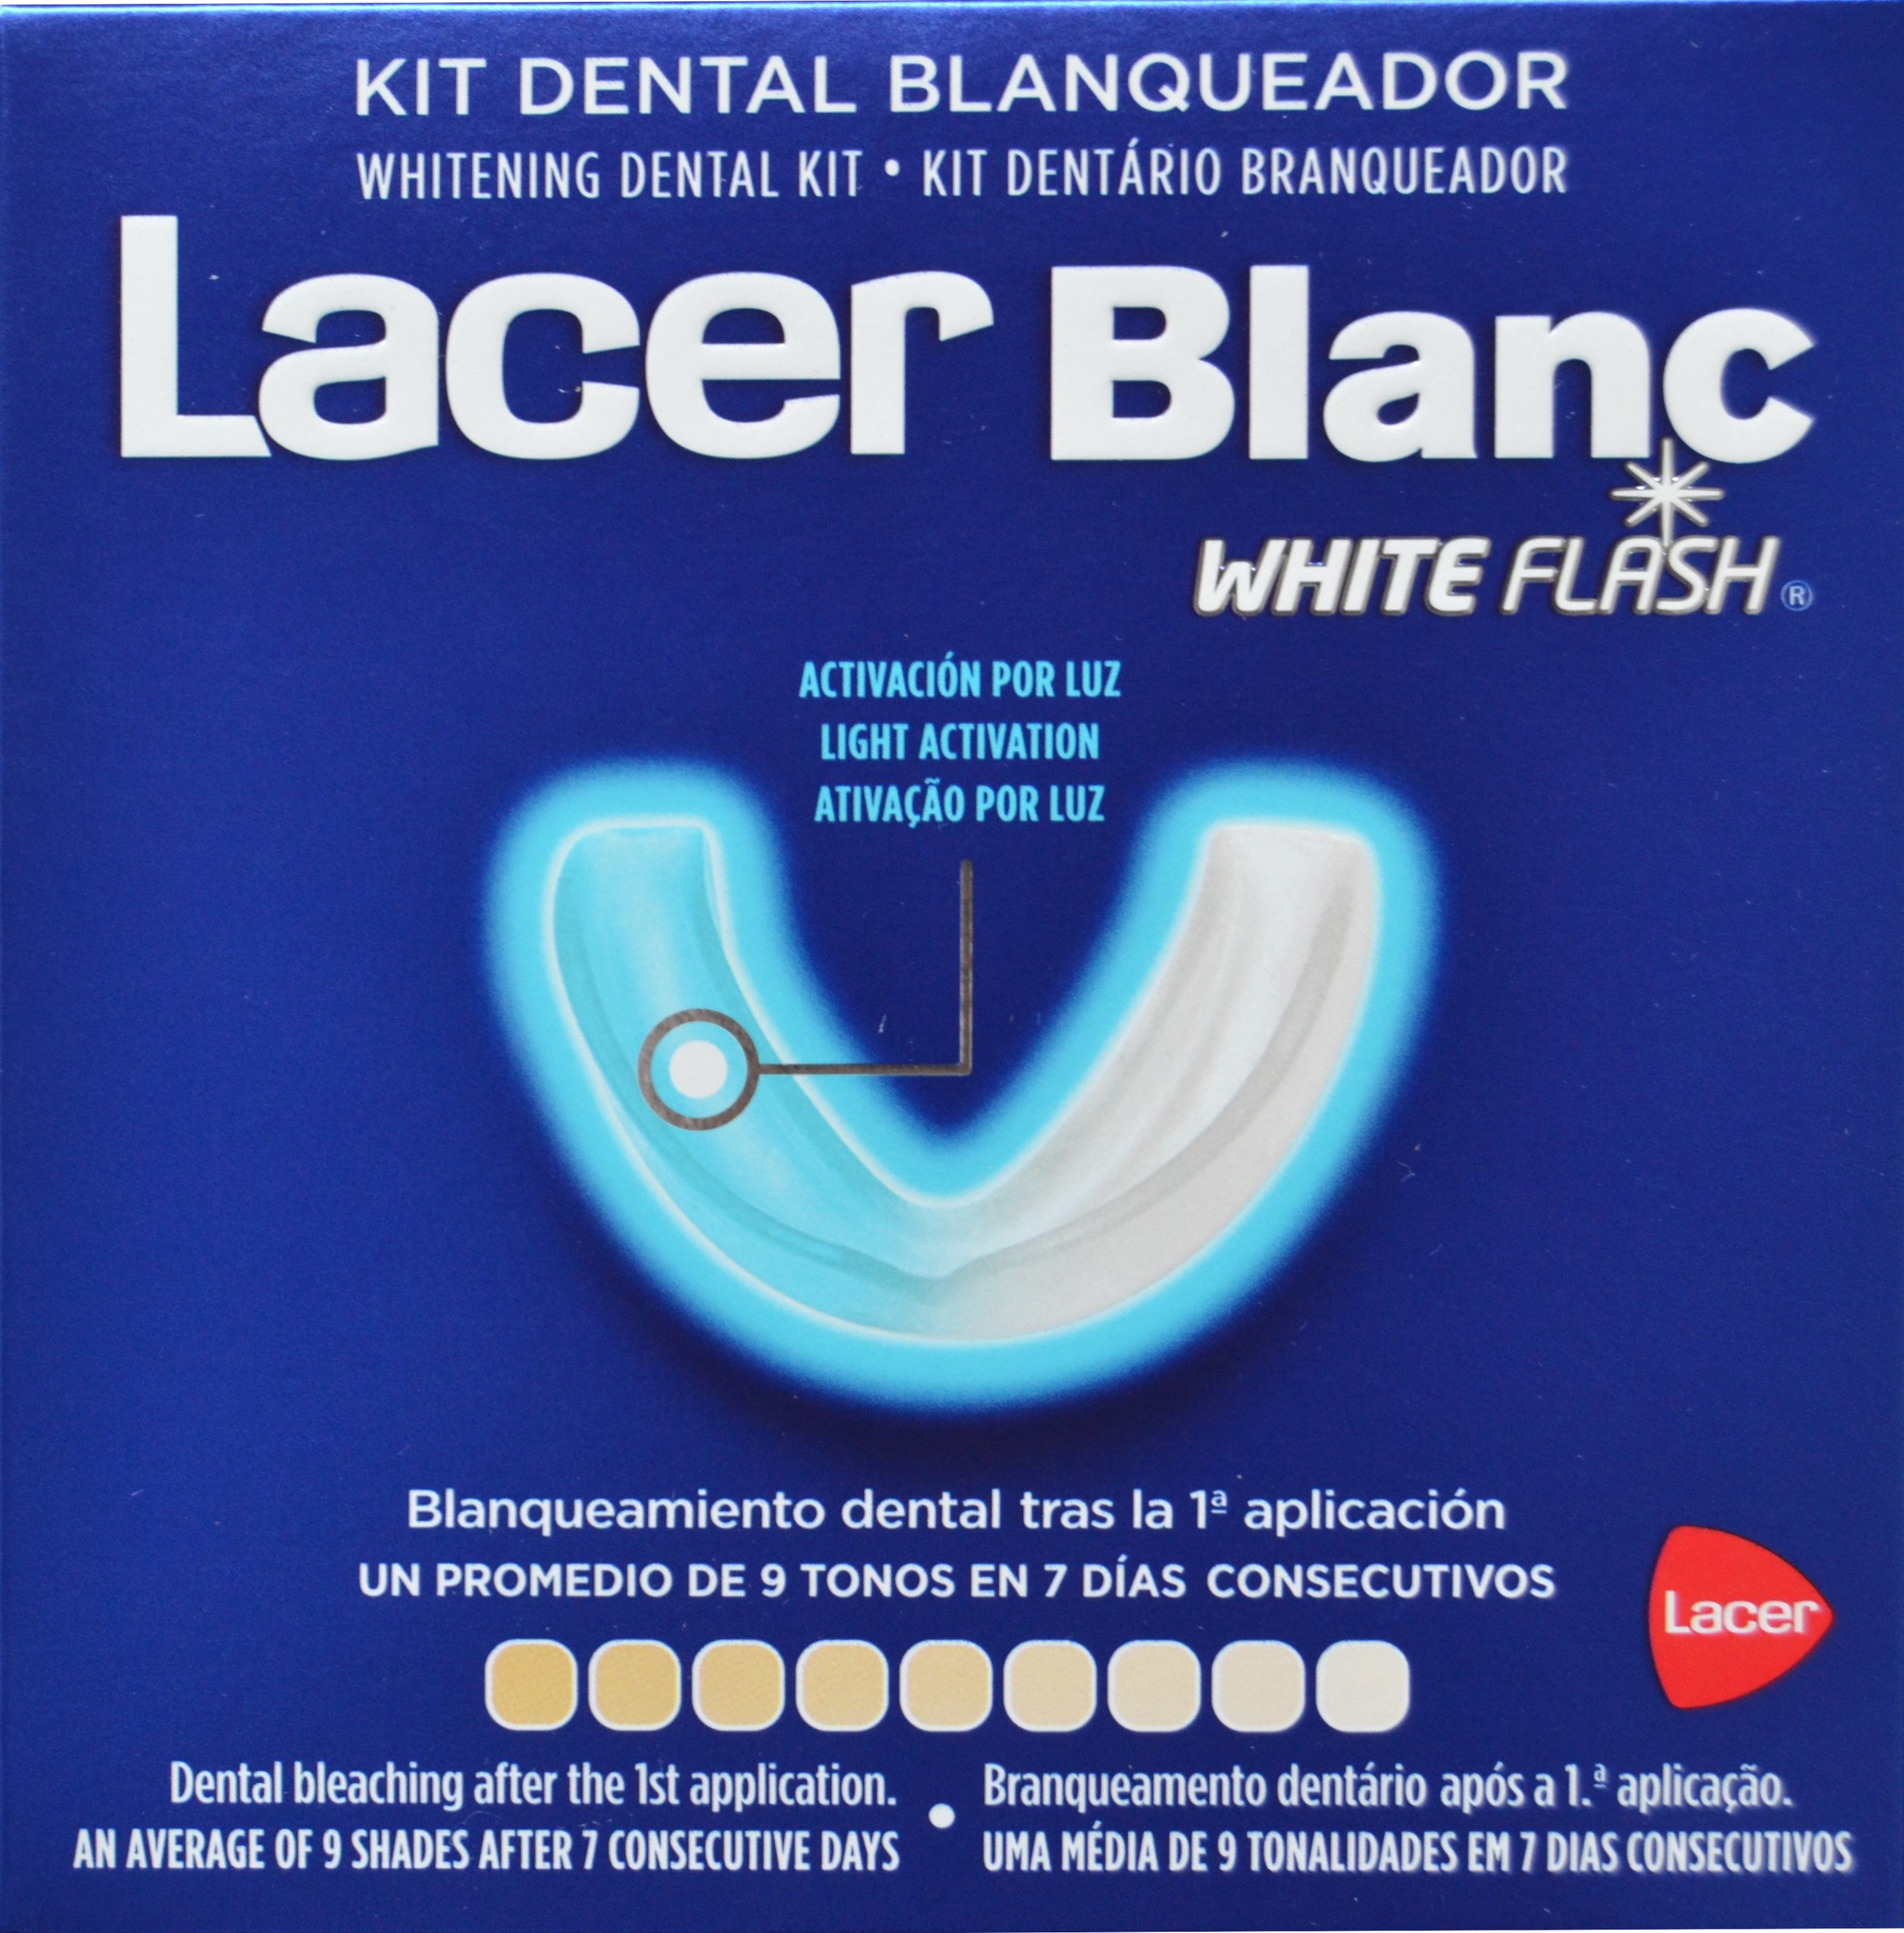 LACER BLANC WHITE FLASH